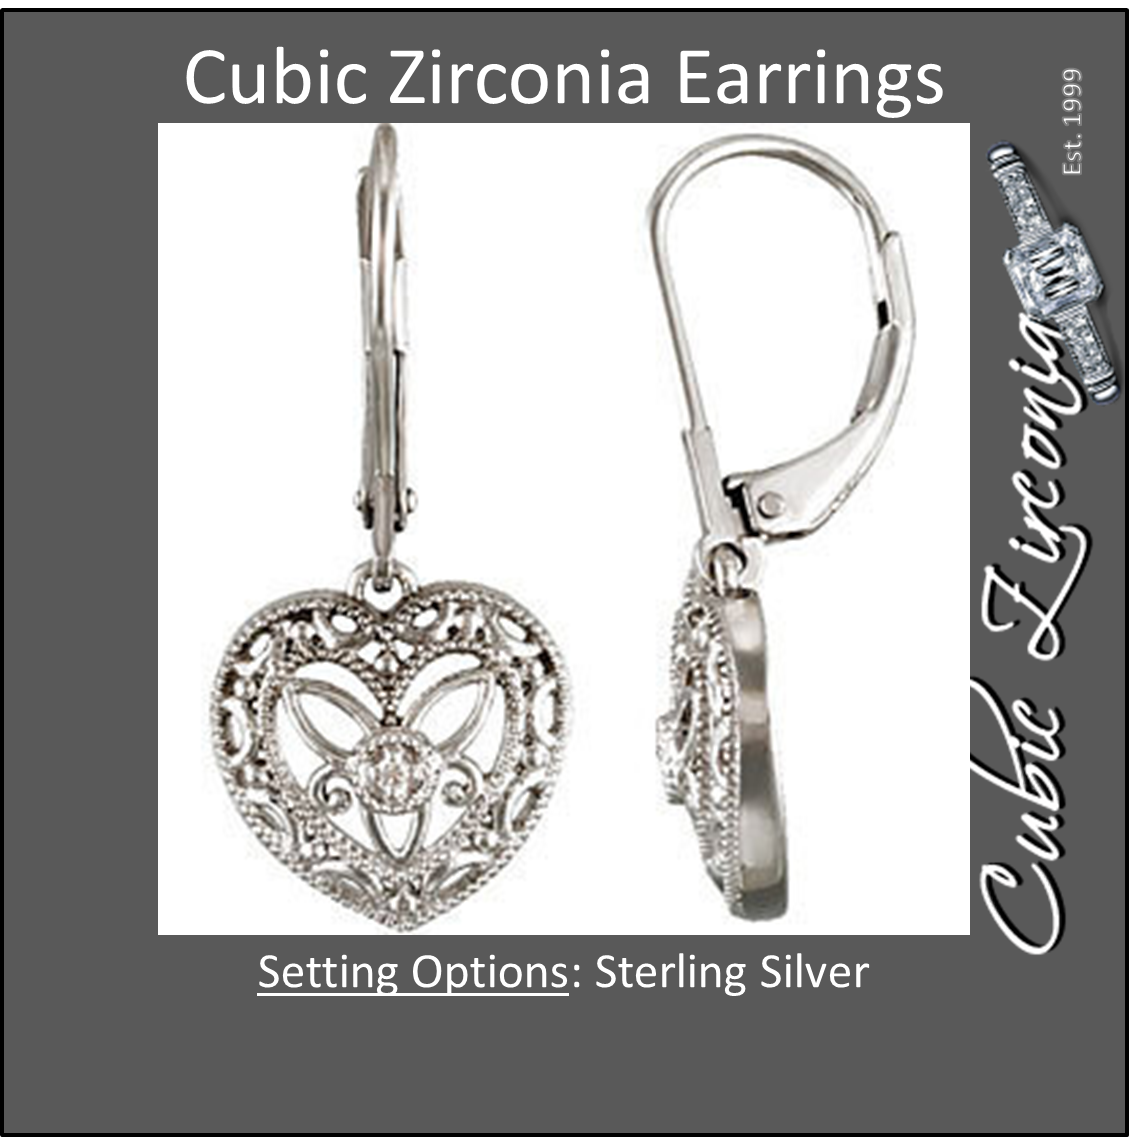 Cubic Zirconia Earrings- 0.02 Carat Heart Design CZ Lever Back Dangle Earring Set